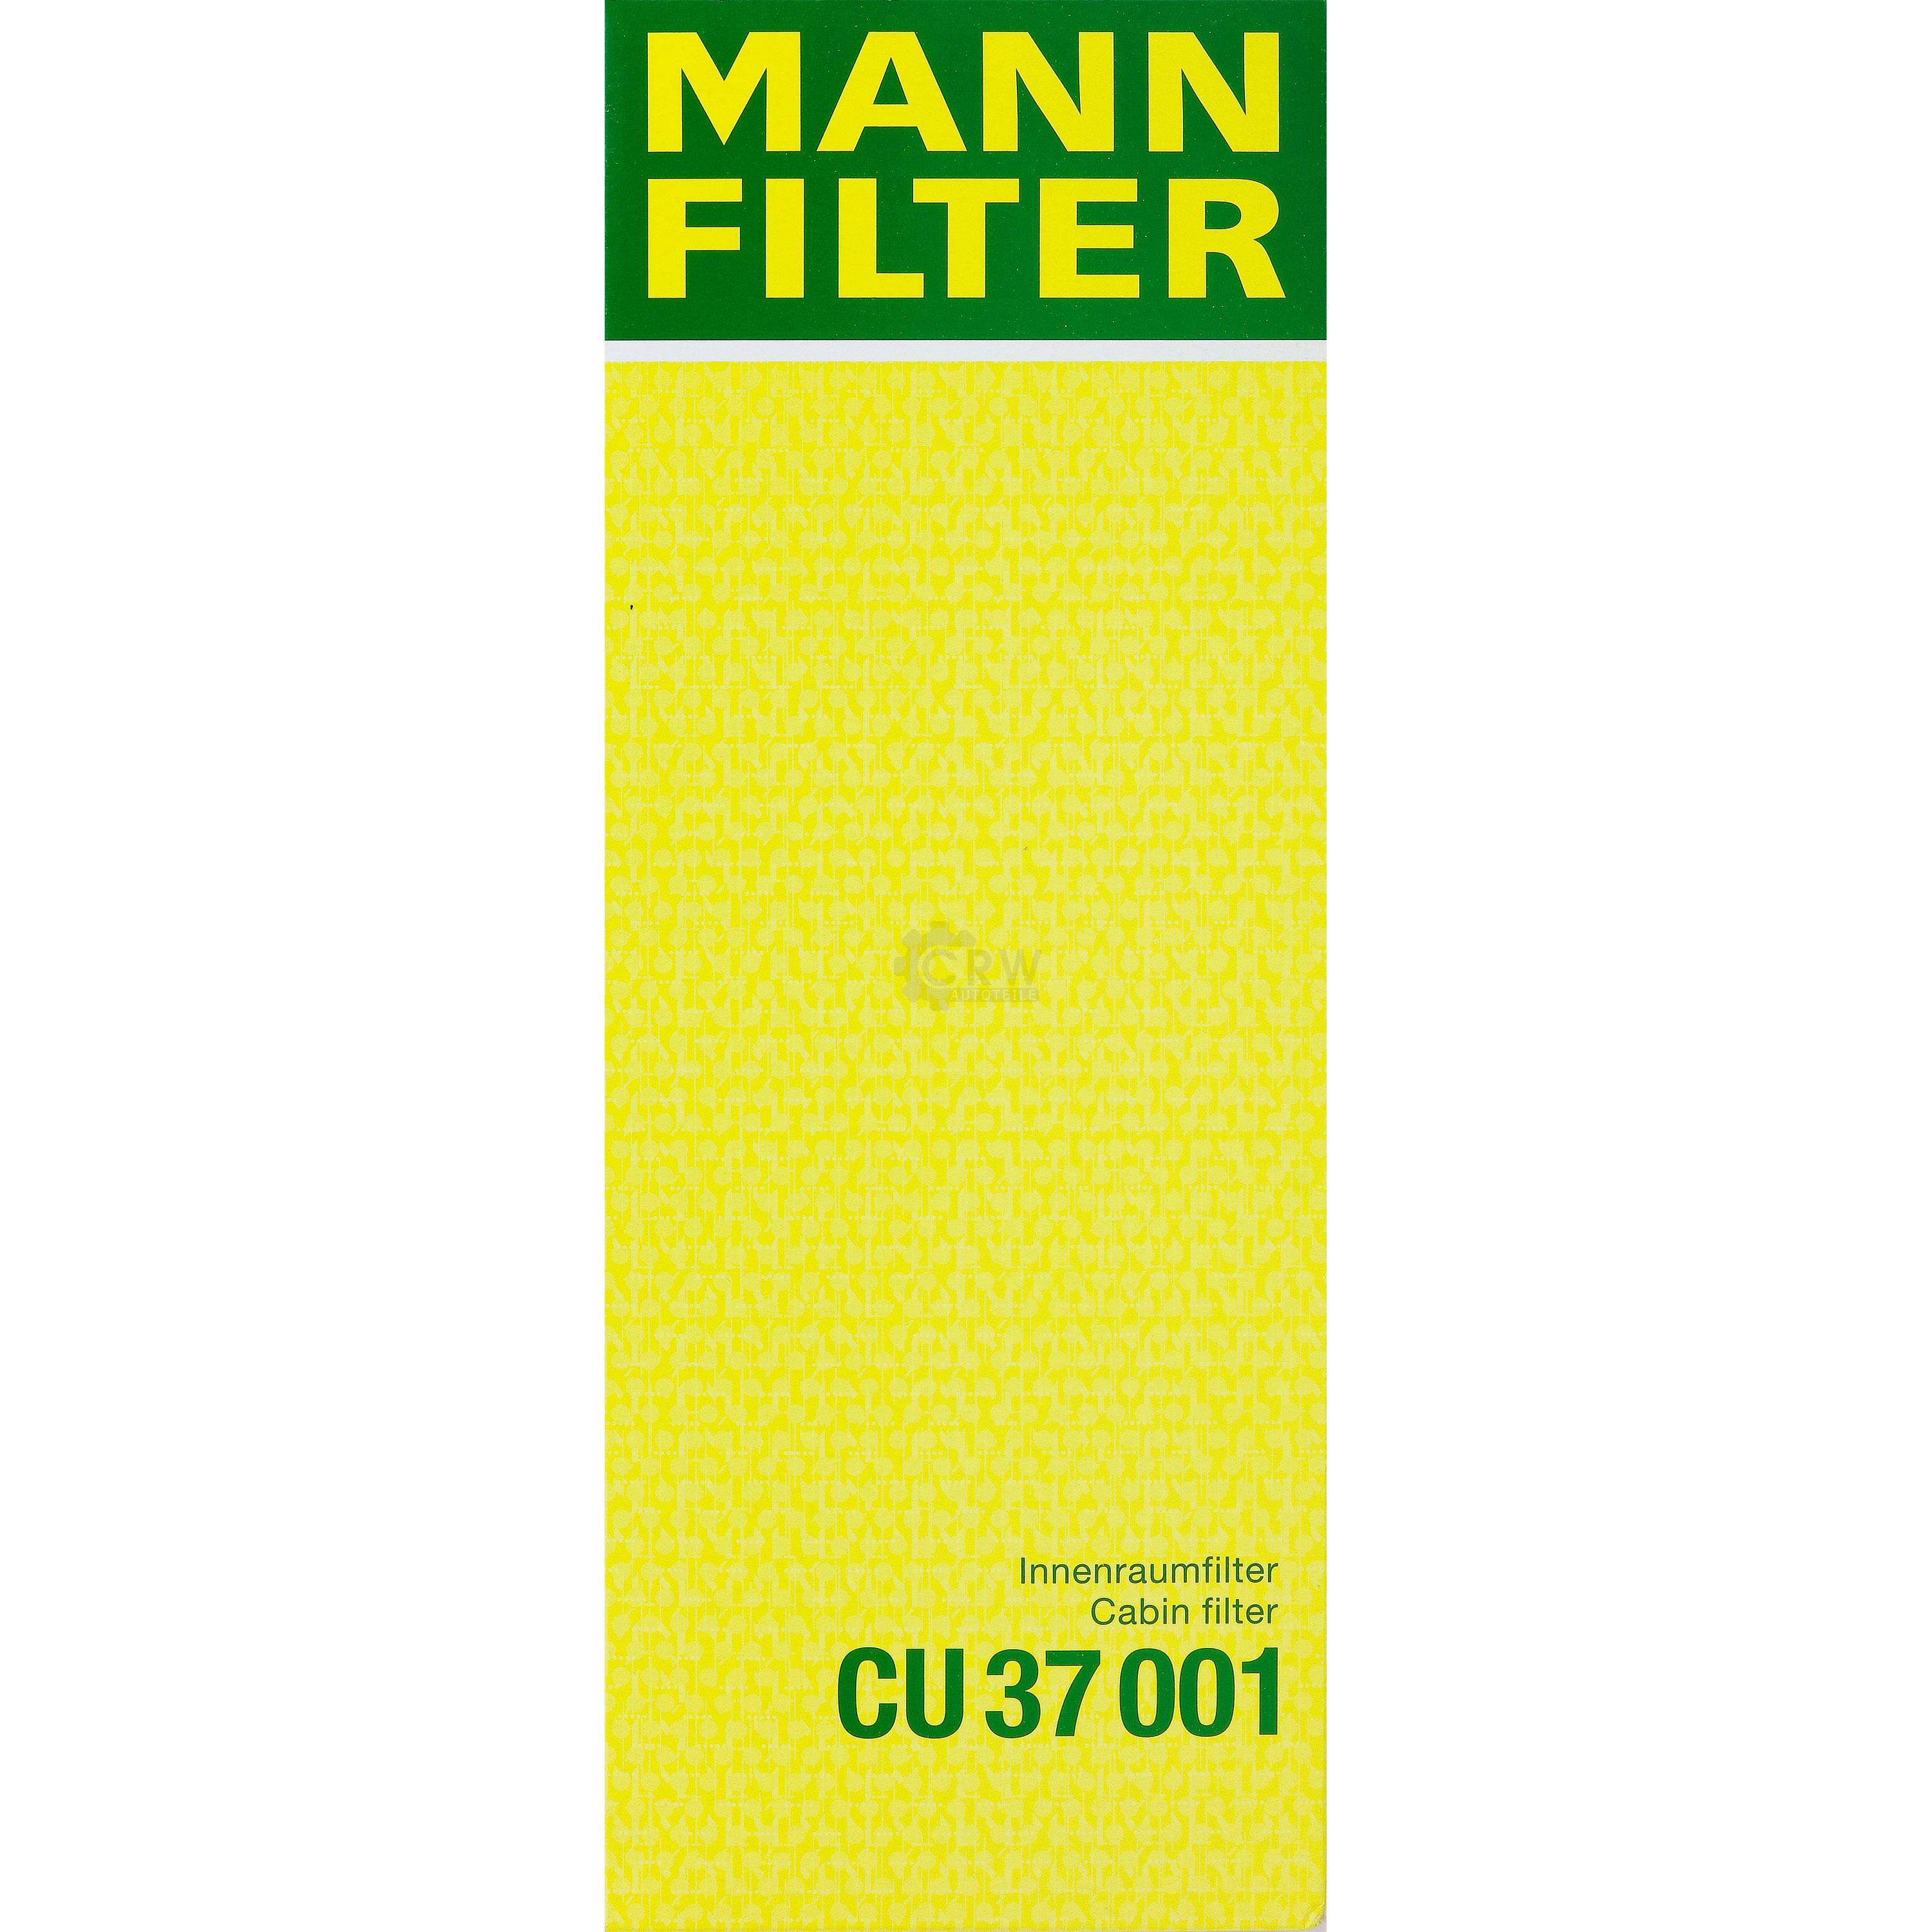 MANN-FILTER Filter Innenraumluft CU 37 001